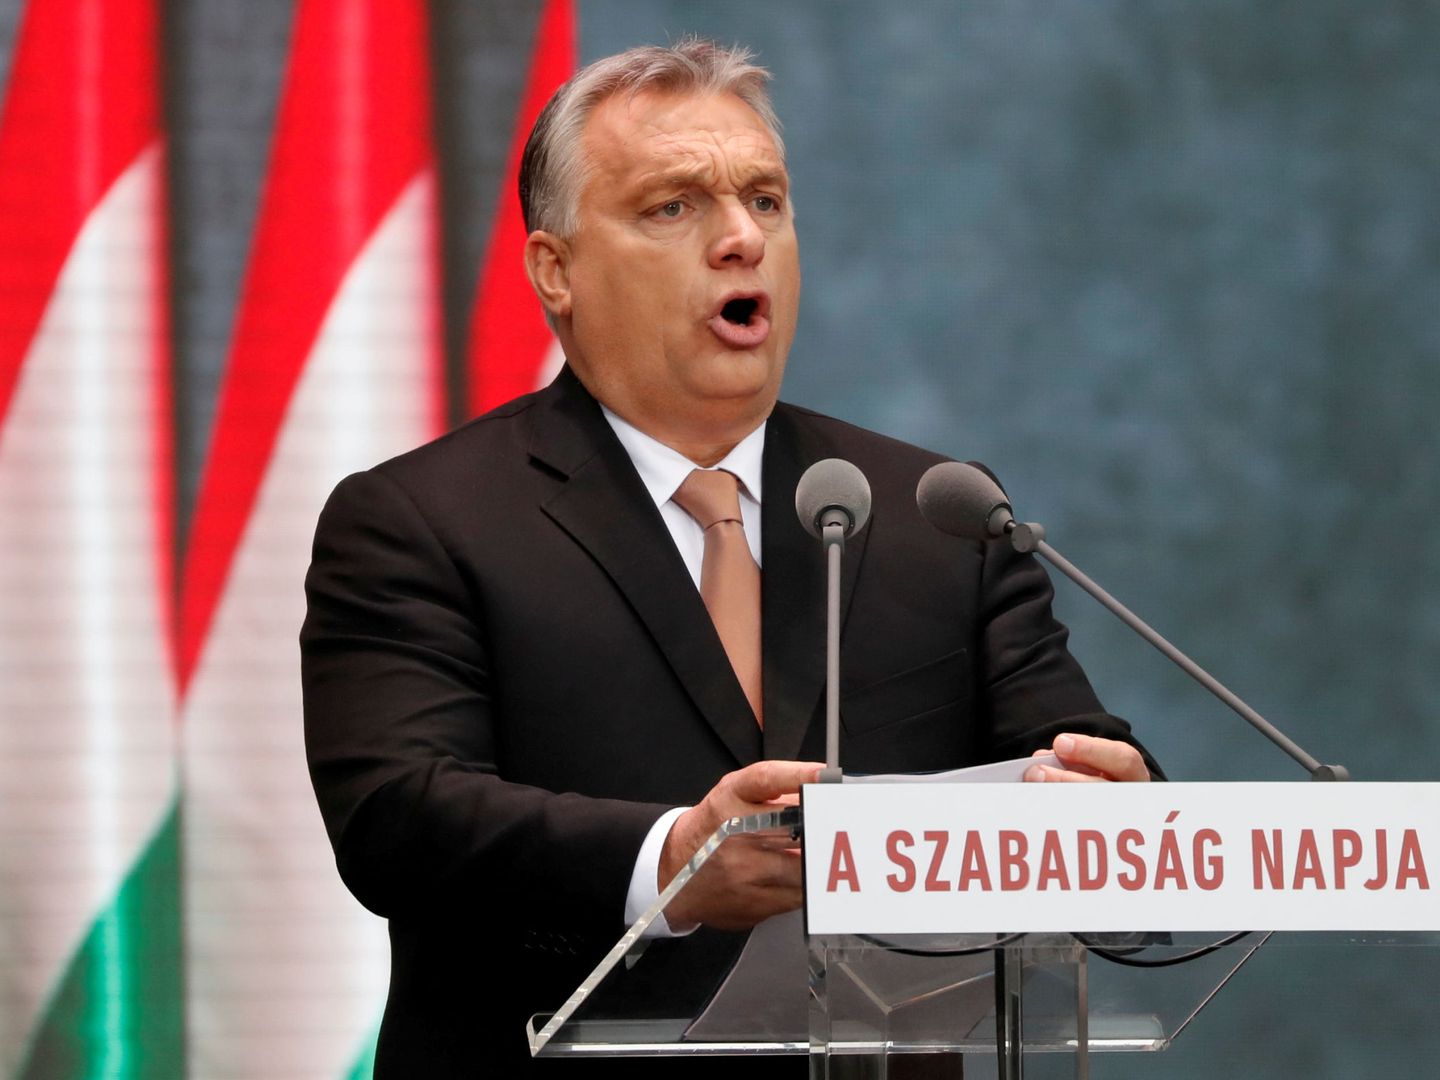 Víktor Orbán da un discurso durante el 62º aniversario del levantamiento húngaro de 1956, en Budapest, el 23 de octubre de 2018. (Reuters)